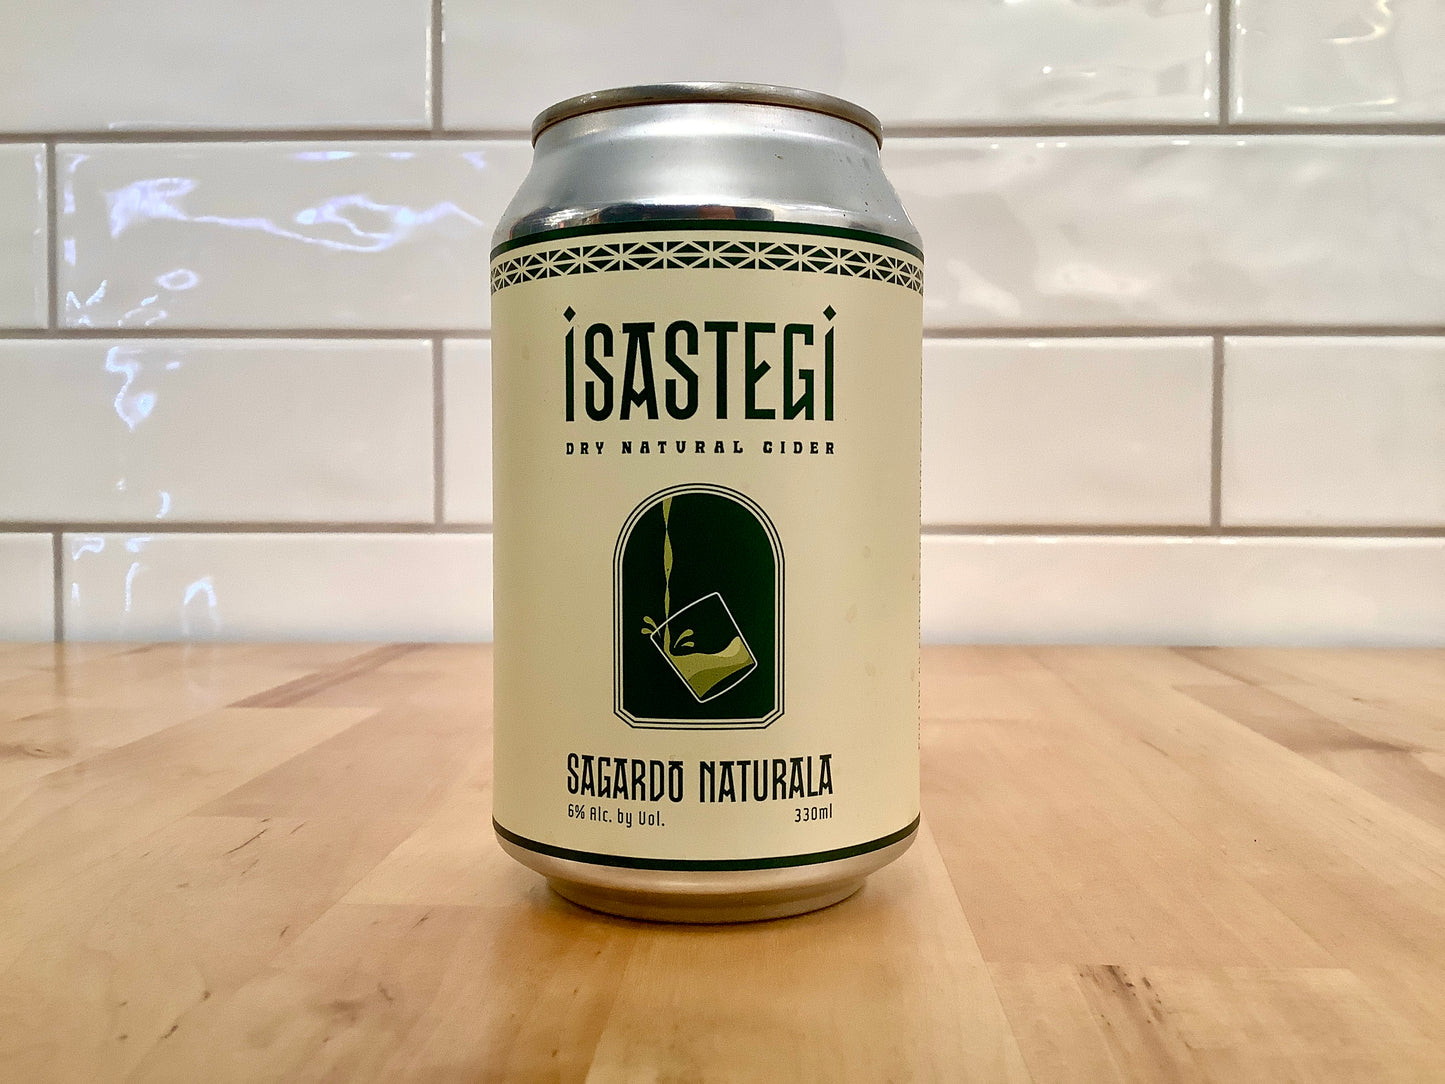 
                  
                    ISASTEGI - Dry Natural Cider
                  
                